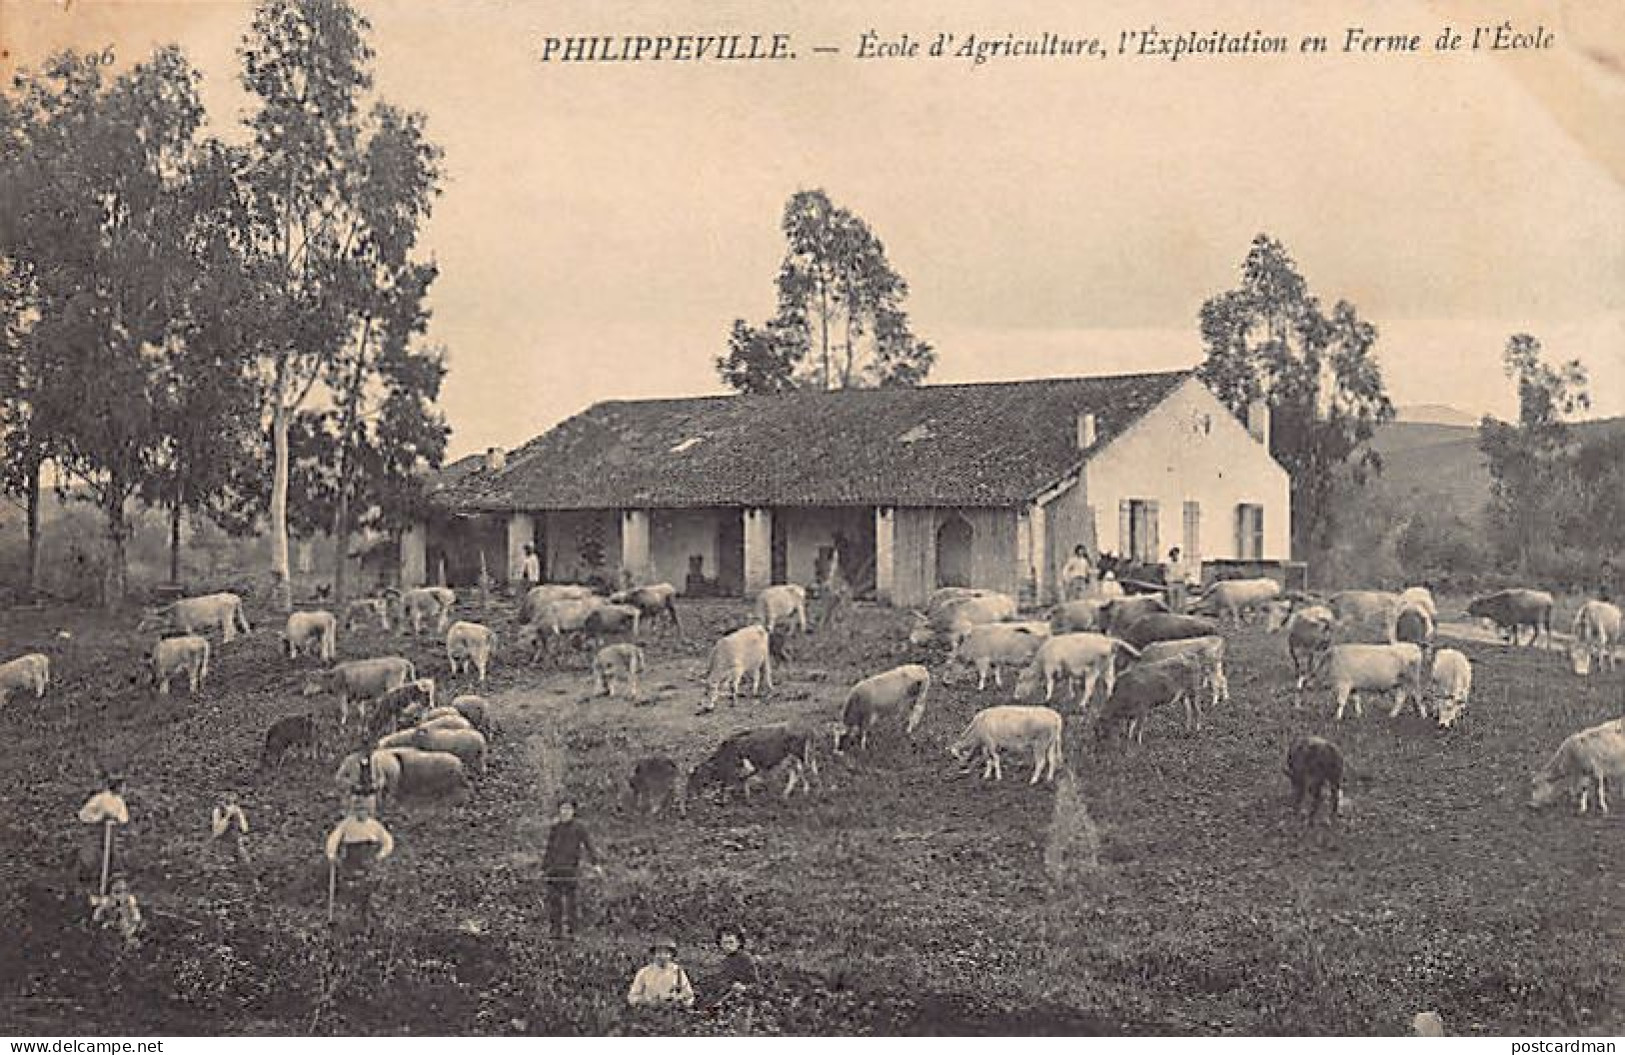 PHILIPPEVILLE Skikda - Ecole D'Agriculture, L'exploitation En Ferme De L'école - Skikda (Philippeville)